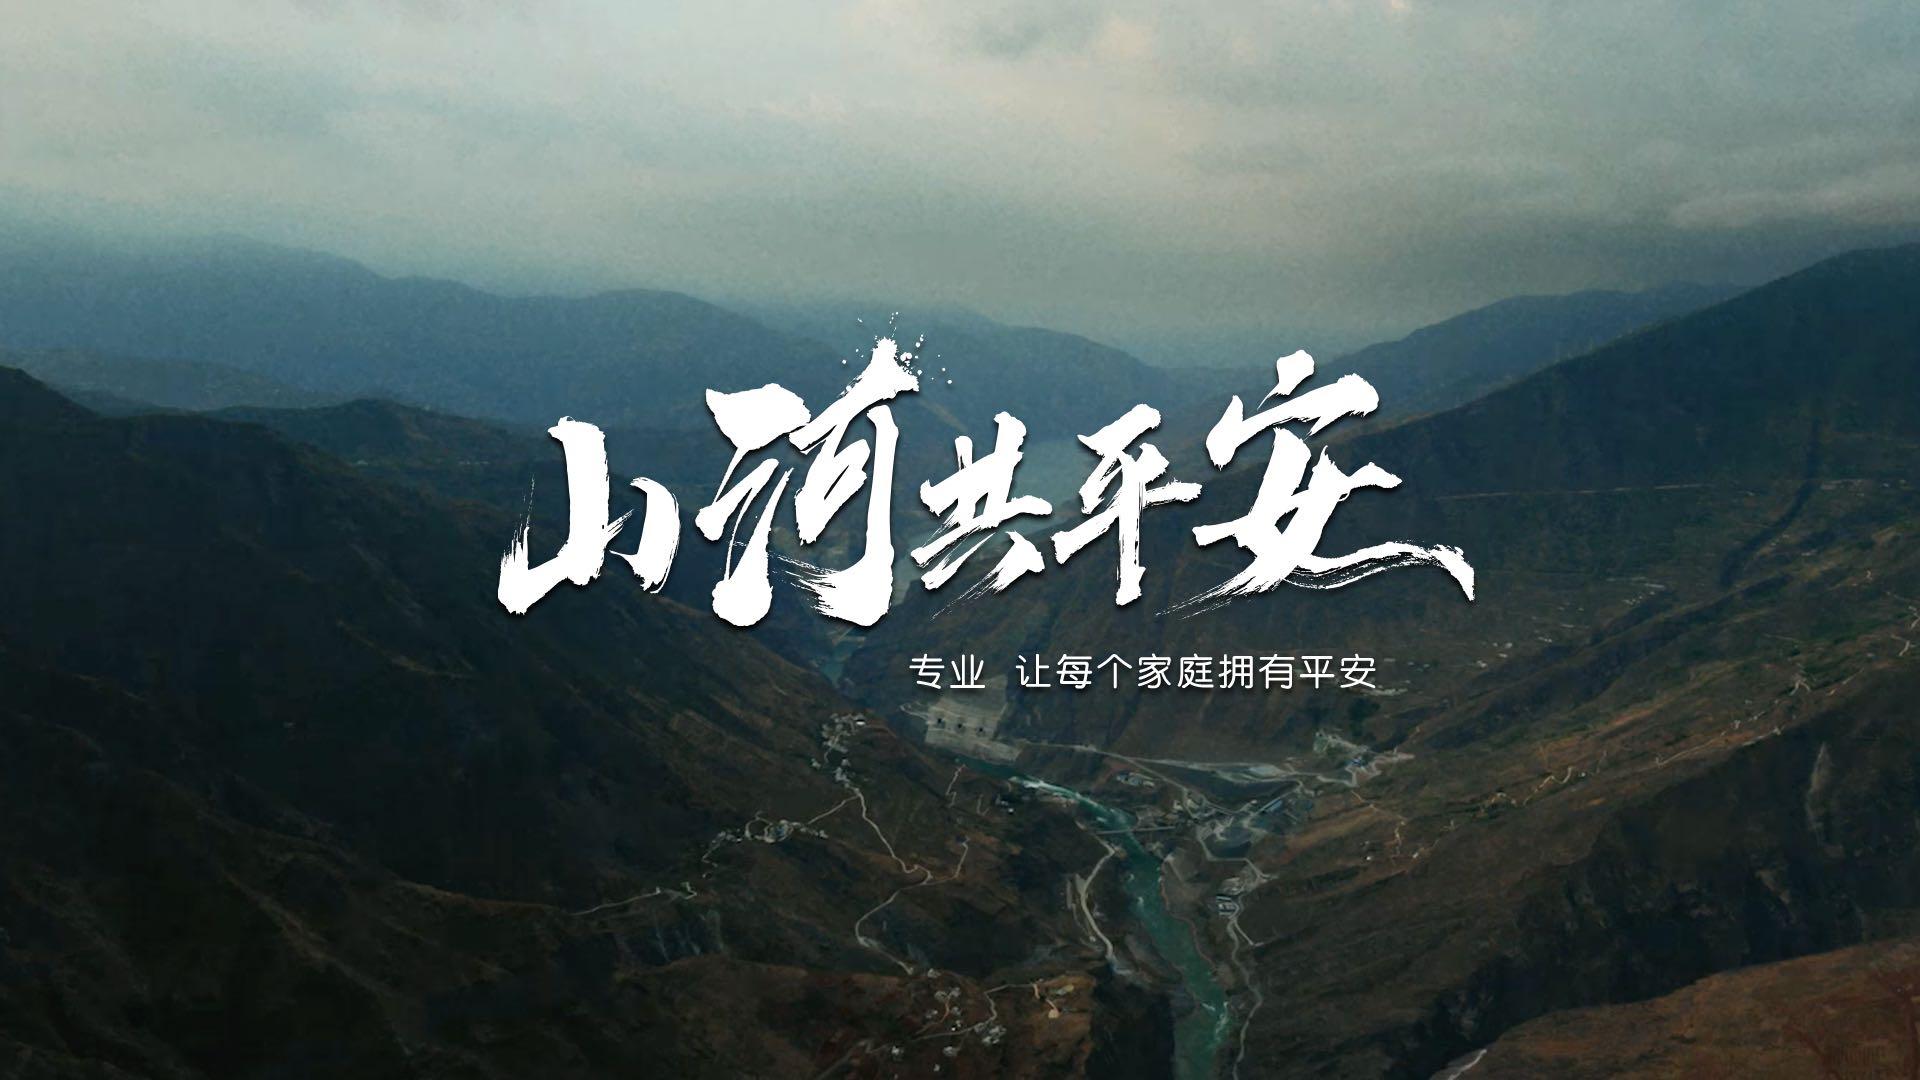 《山河共平安》中国平安35周年主题影片